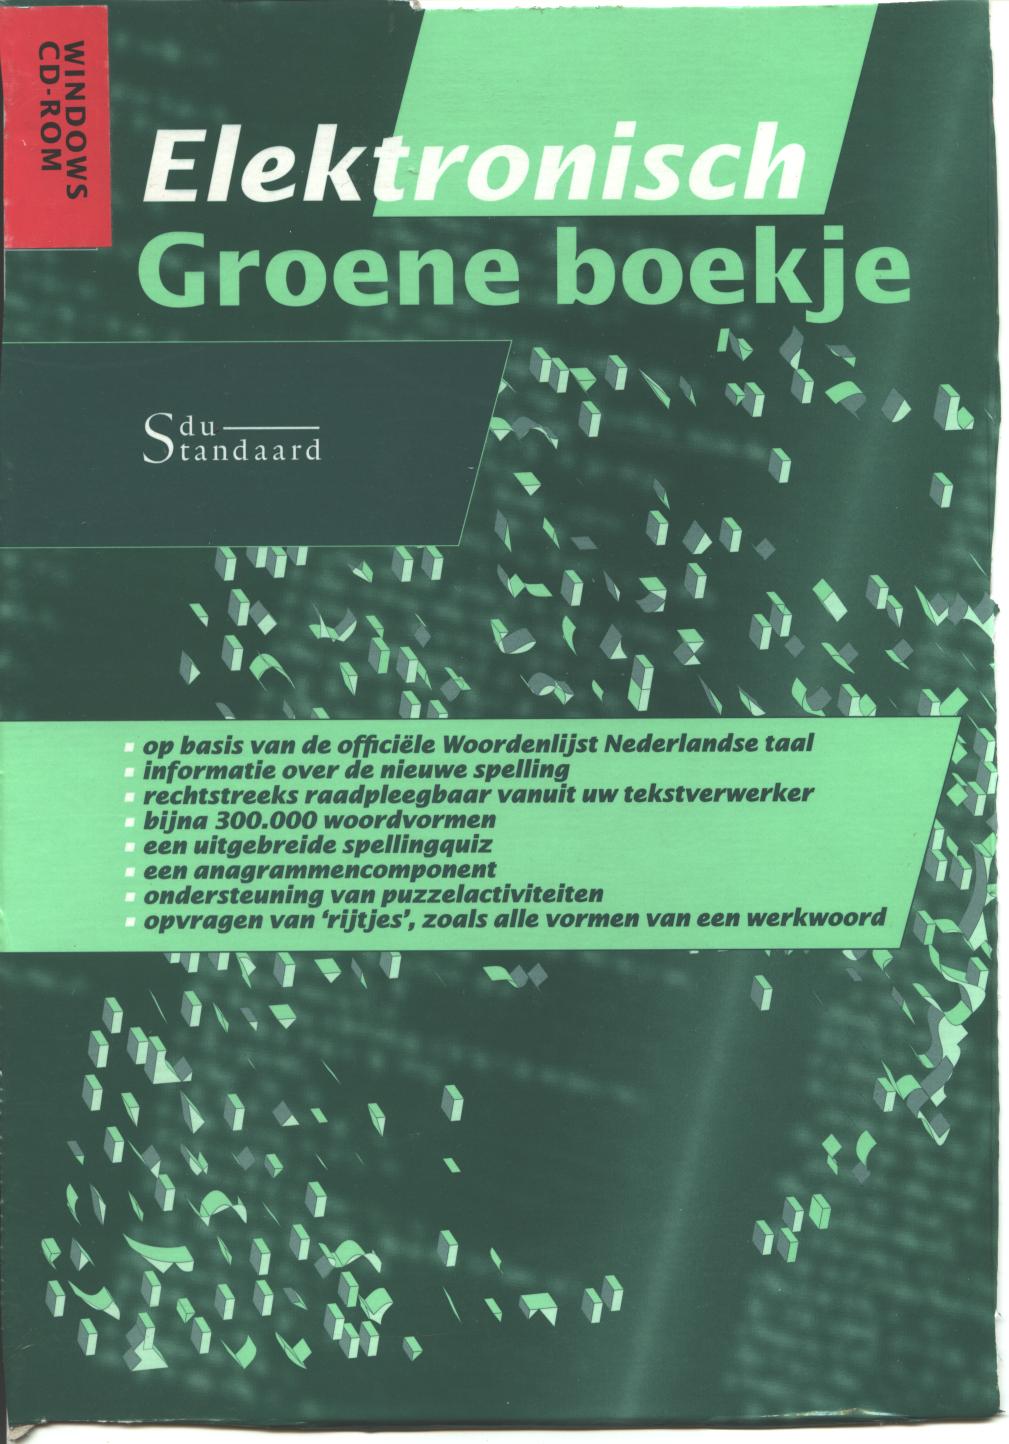 [Elektronisch+Groene+Boekje+1996.jpg]